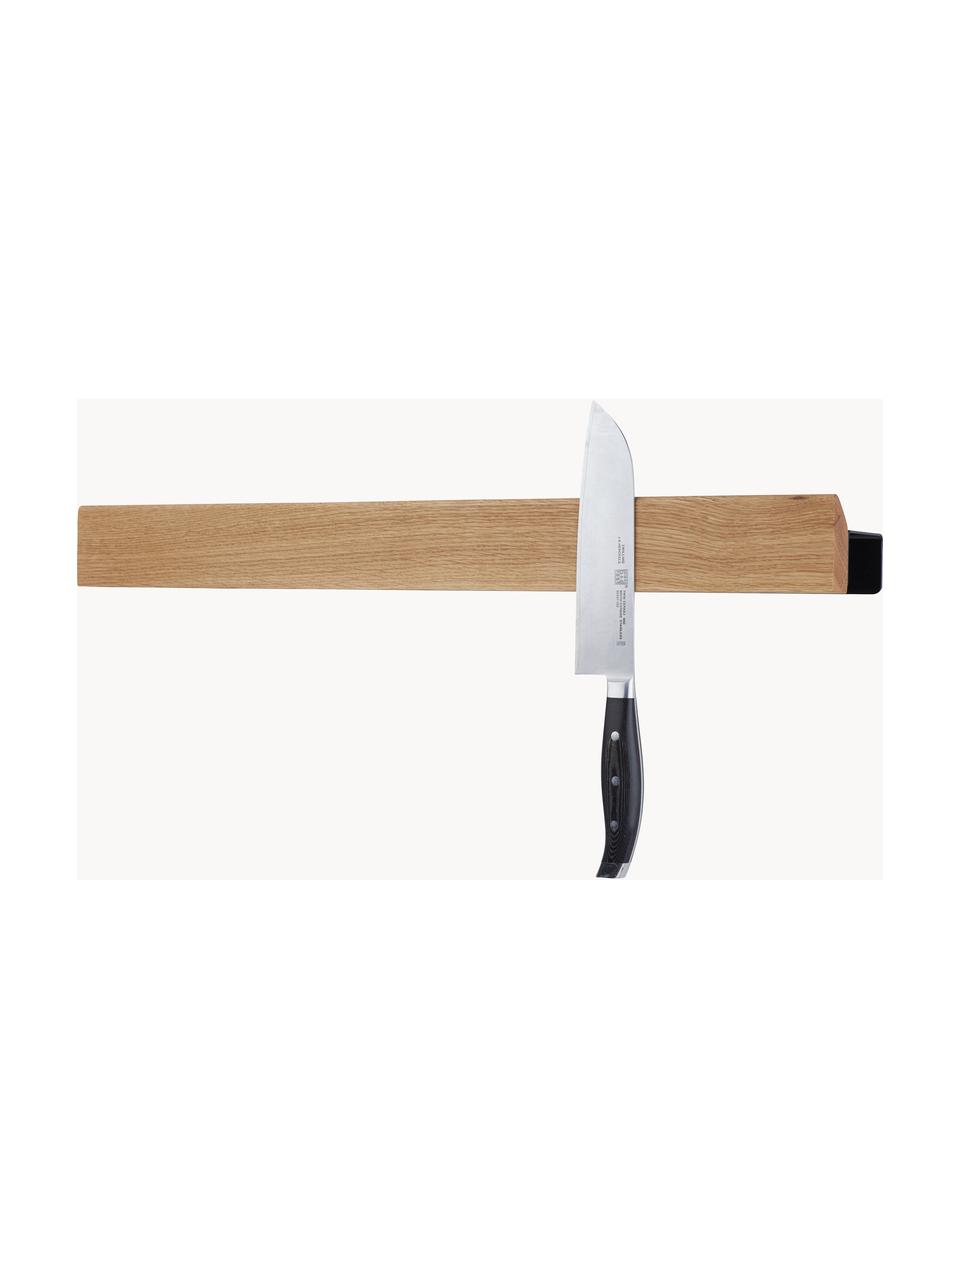 Banda magnetica Flex, Asta: legno di quercia, Legno chiaro, nero, Larg. 60 x Alt. 6 cm